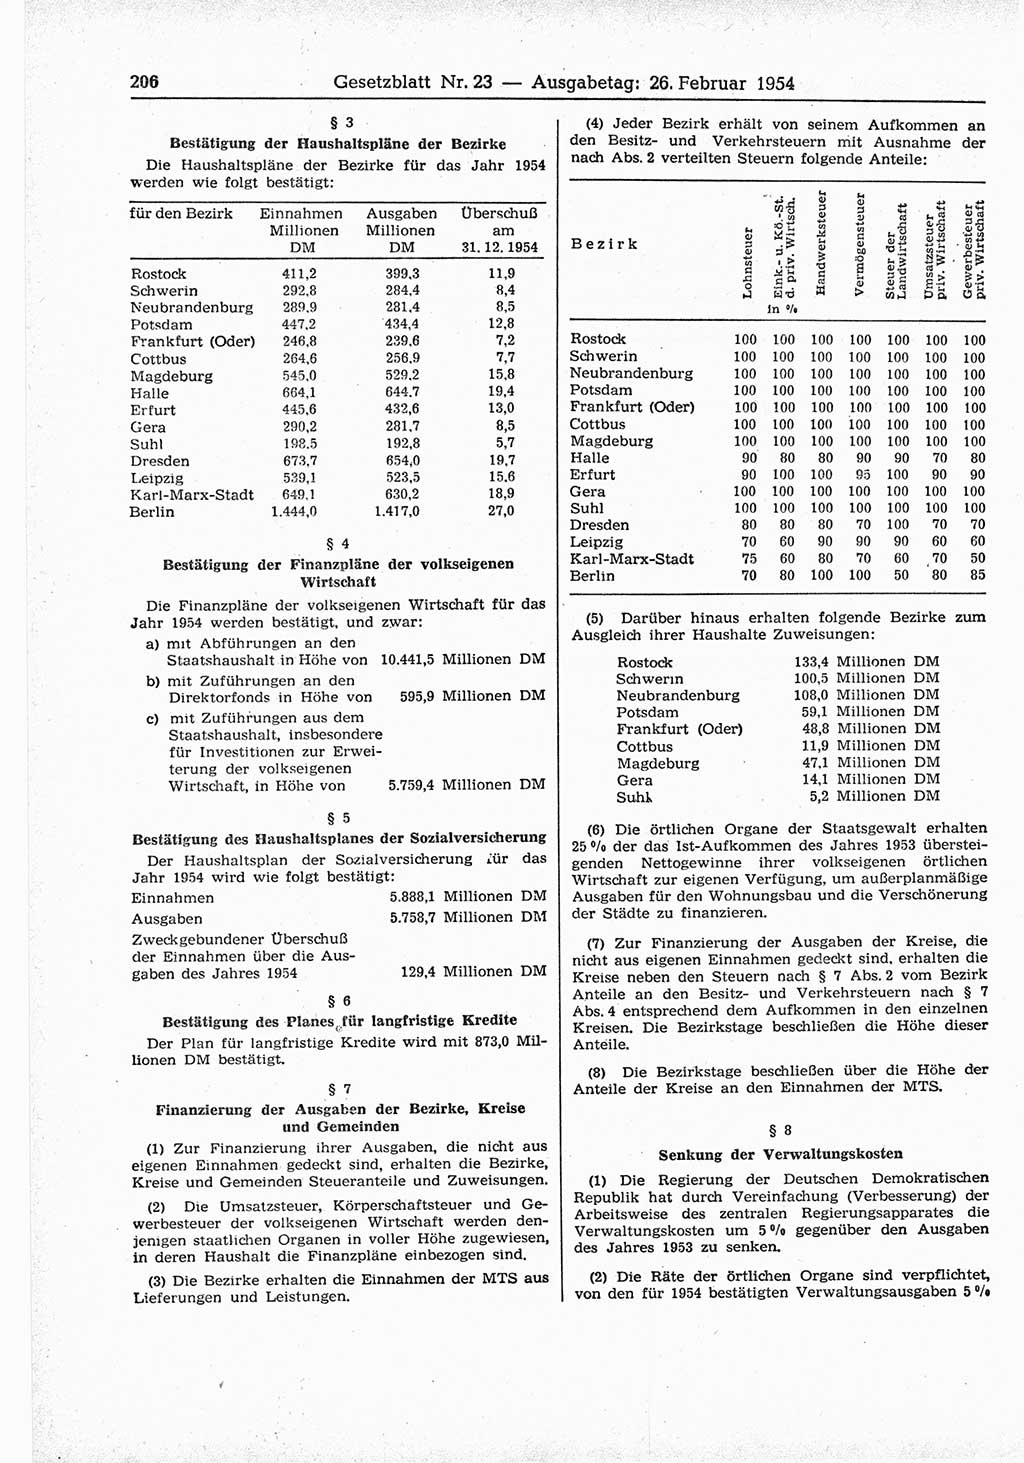 Gesetzblatt (GBl.) der Deutschen Demokratischen Republik (DDR) 1954, Seite 206 (GBl. DDR 1954, S. 206)